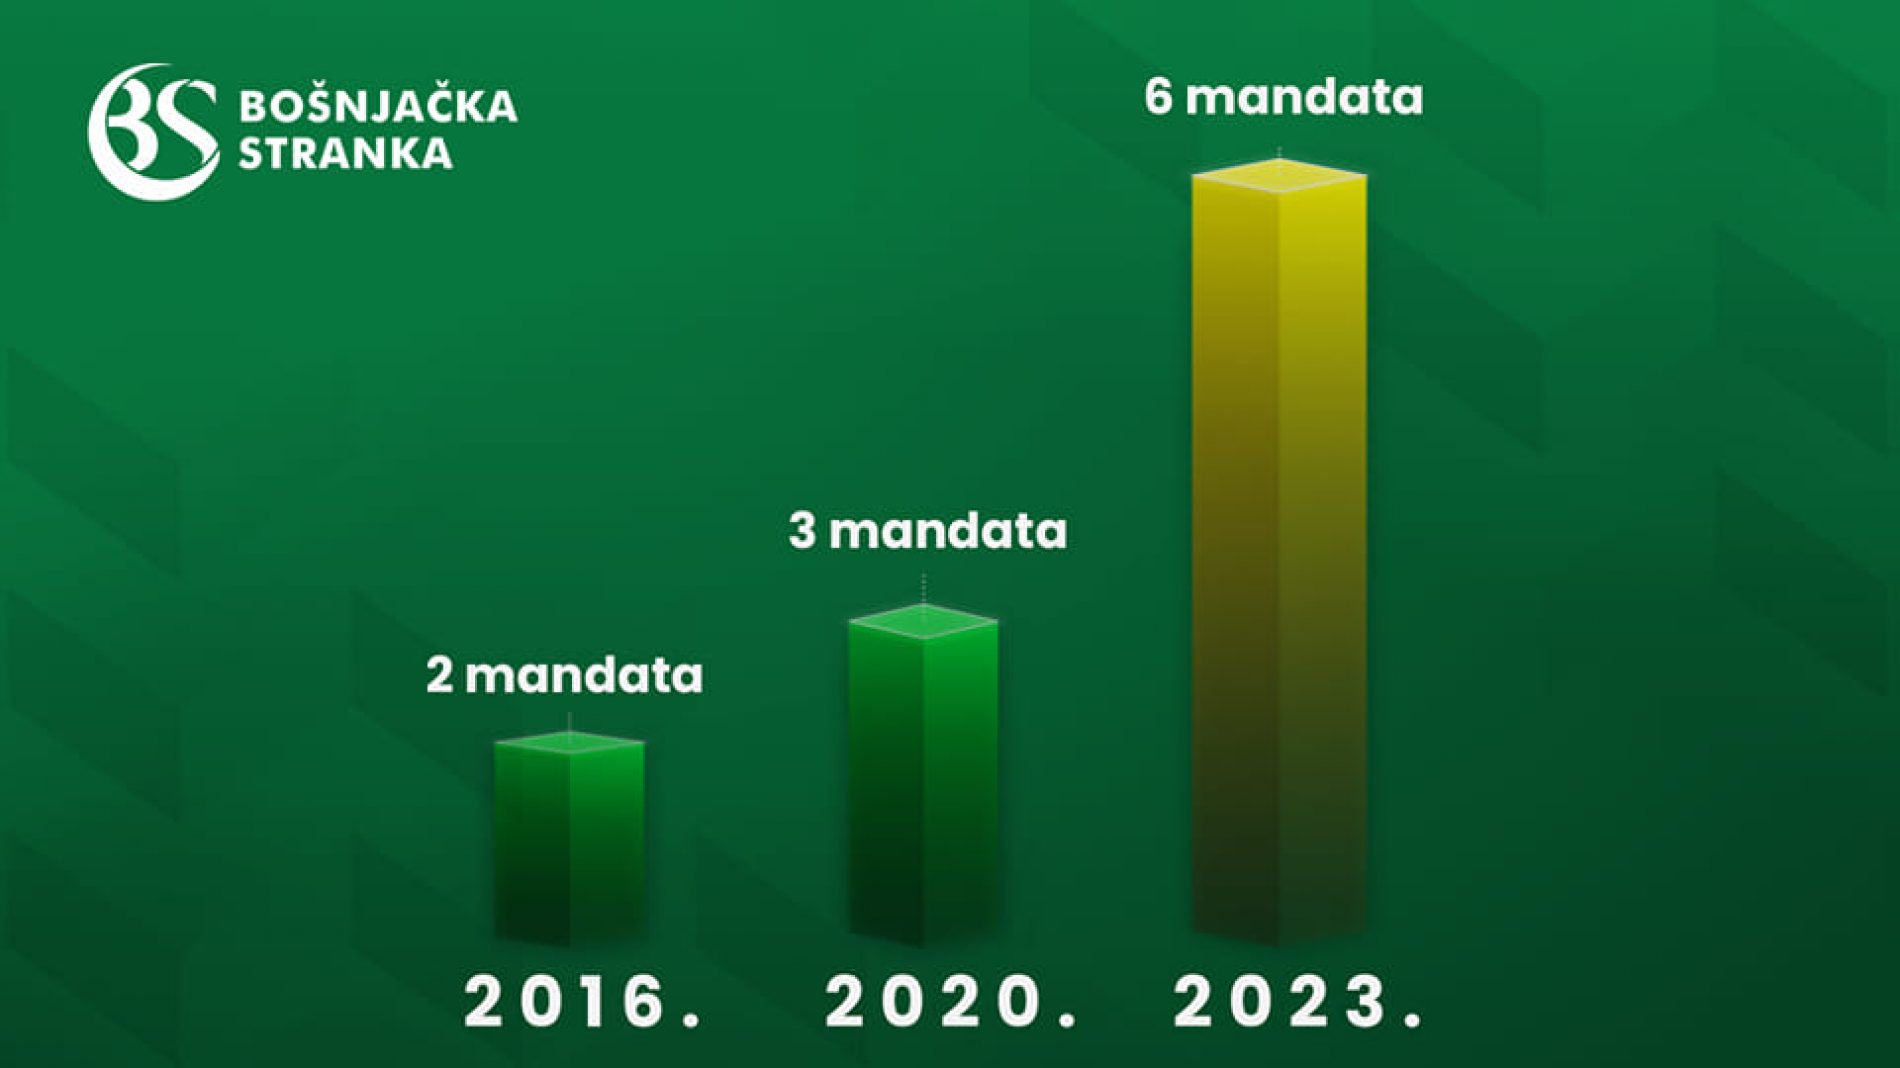 Bošnjačka stranka ima 6 mandata u parlamentu Crne Gore